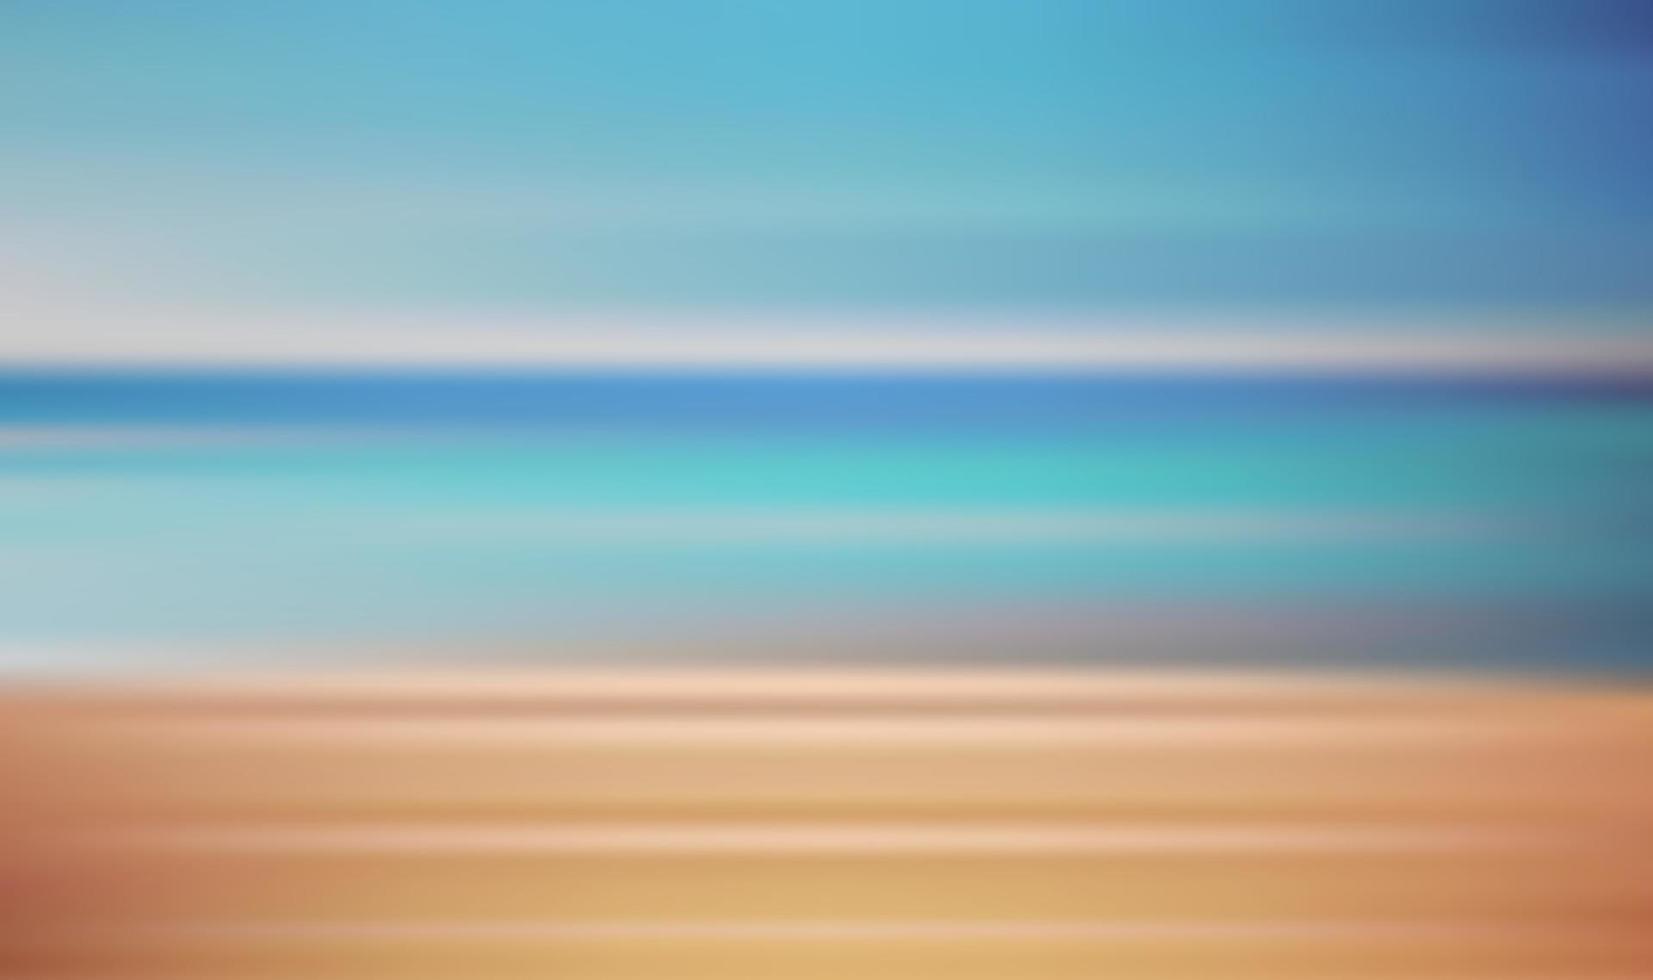 rörelse suddar tropisk solnedgång strand med en bakgrund av abstrakt havsvågor bokeh solljus. sommarsemester och affärsresor koncept. antik färgfilterstil vektor